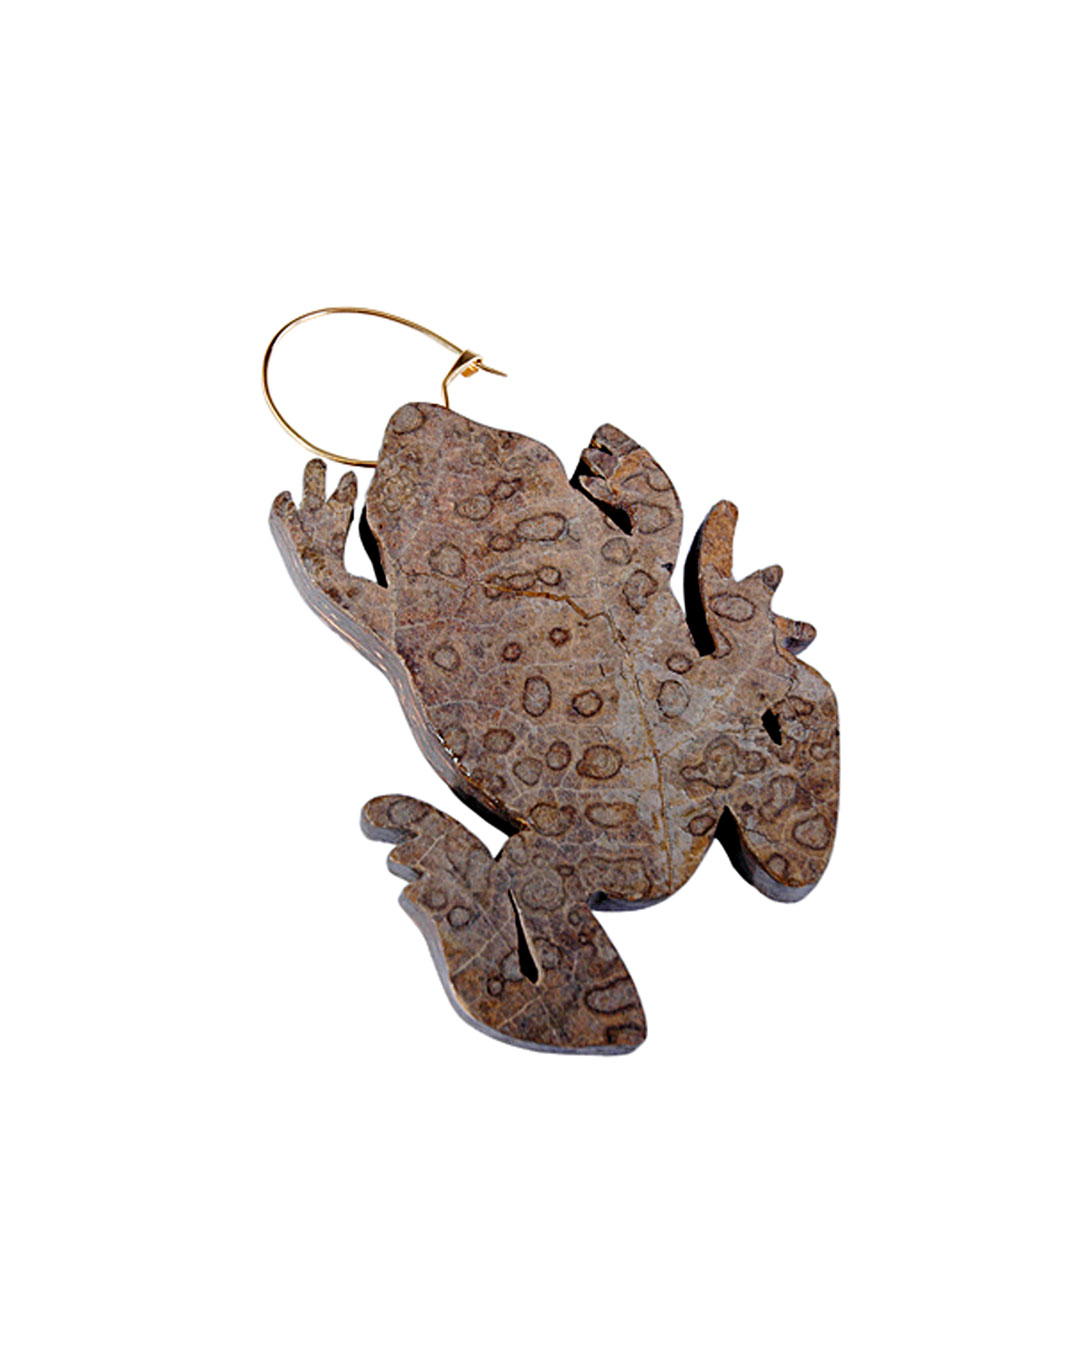 Carmen Hauser, Kröte (Toad), 2012, brooch; fig leaf, resin, gold, 100 x 65 mm, €1090